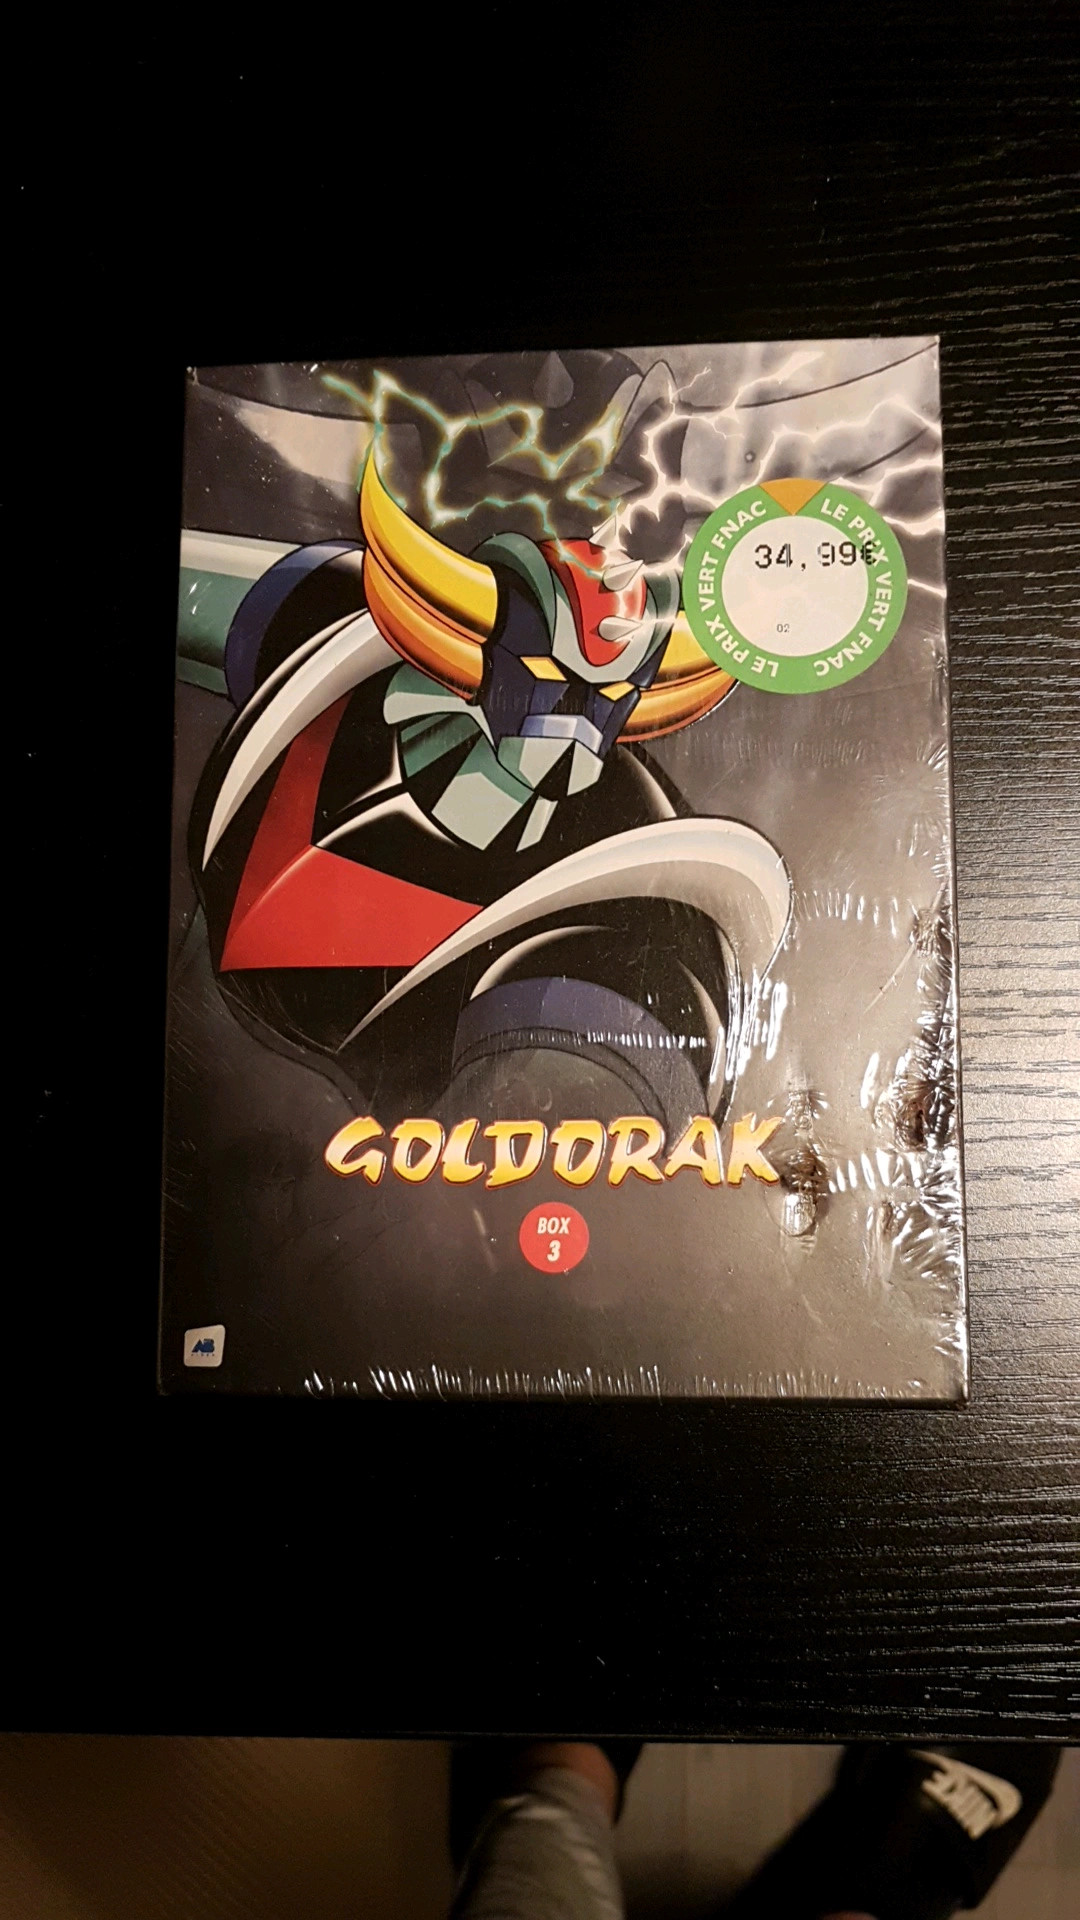  Goldorak Box 2 (coffret 5 Dvd) - DVD